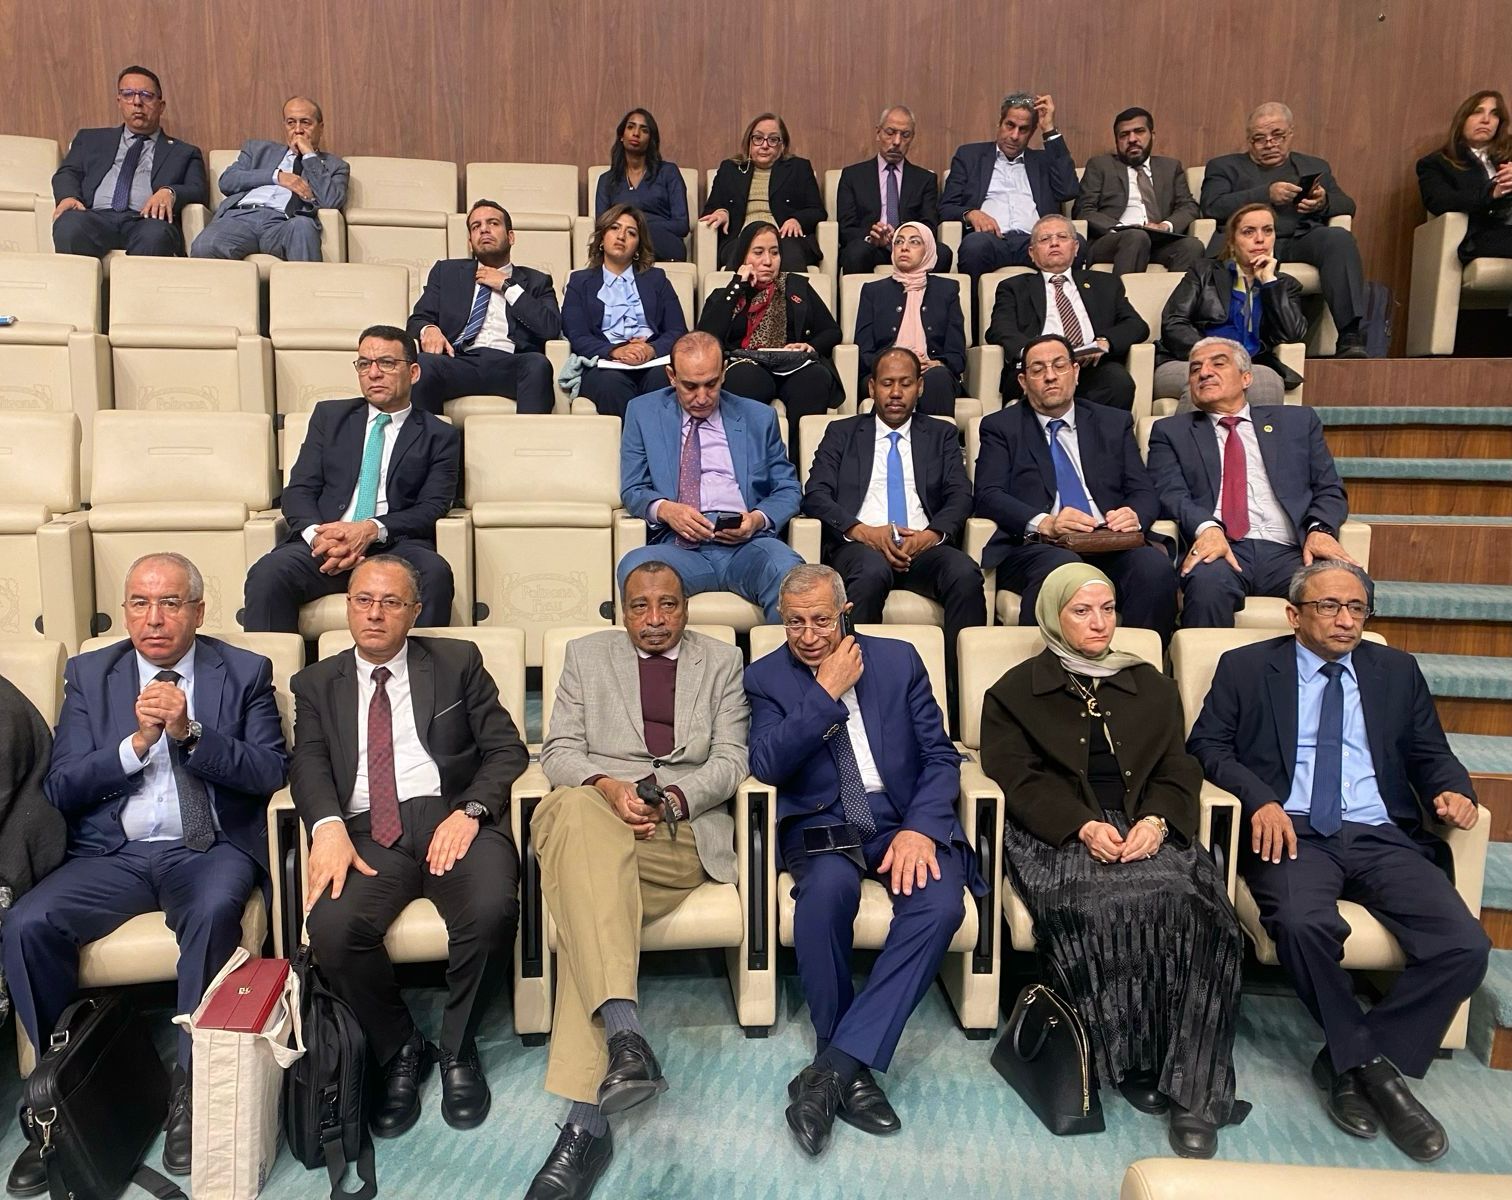 معالي البروفيسور الدخيري يشارك في اجتماع الدورة الوزارية 113 للمجلس الاقتصادي والاجتماعي العربي